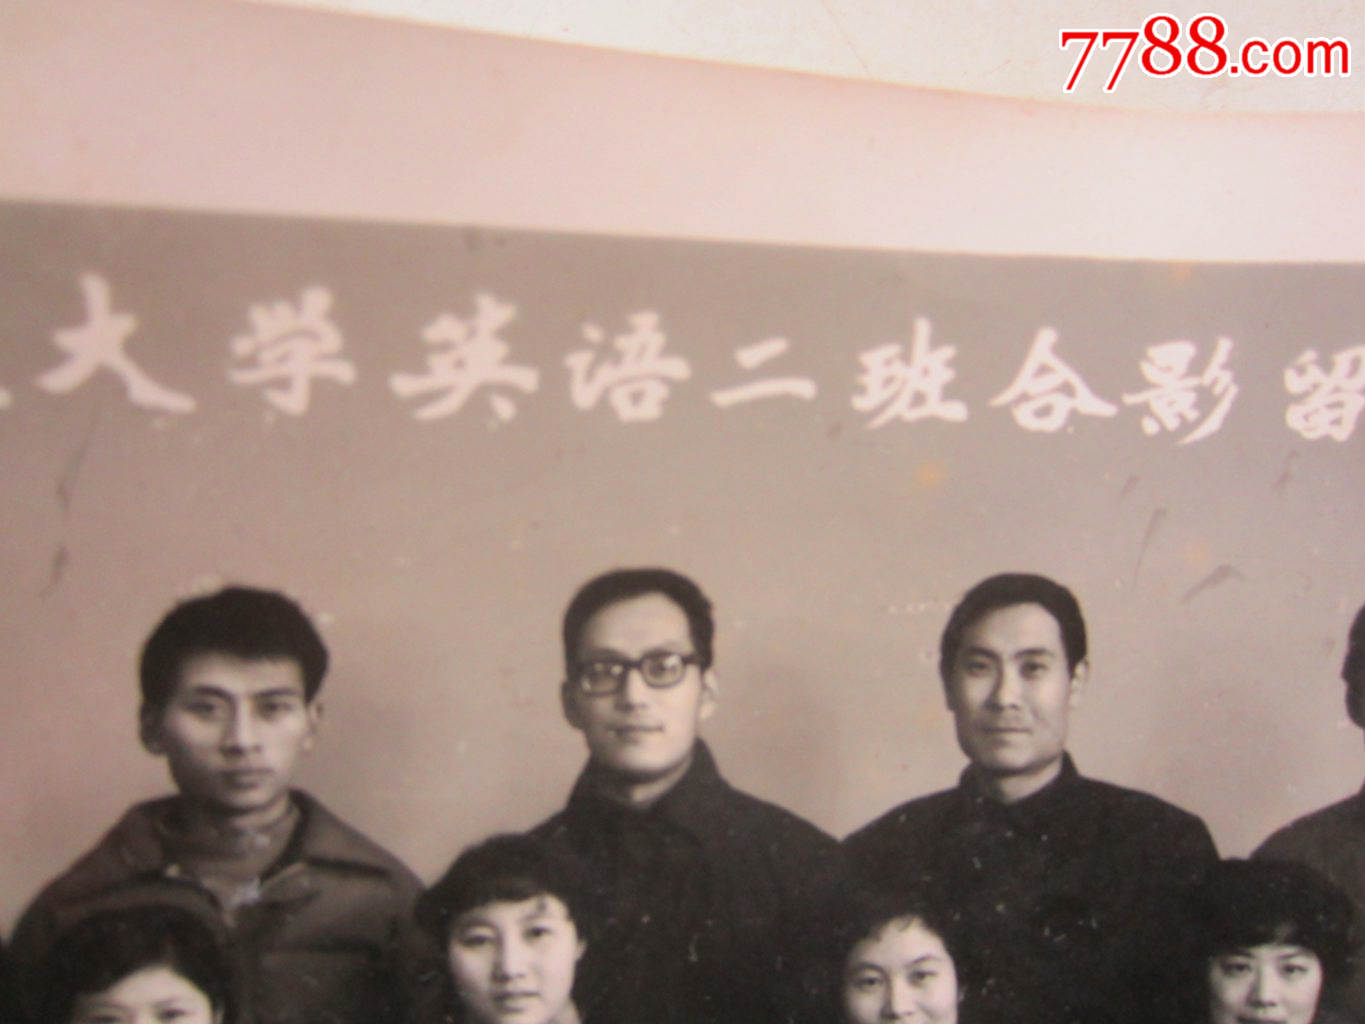 上海外国语学院夜大学英语二班合影留念1981(老照片)1